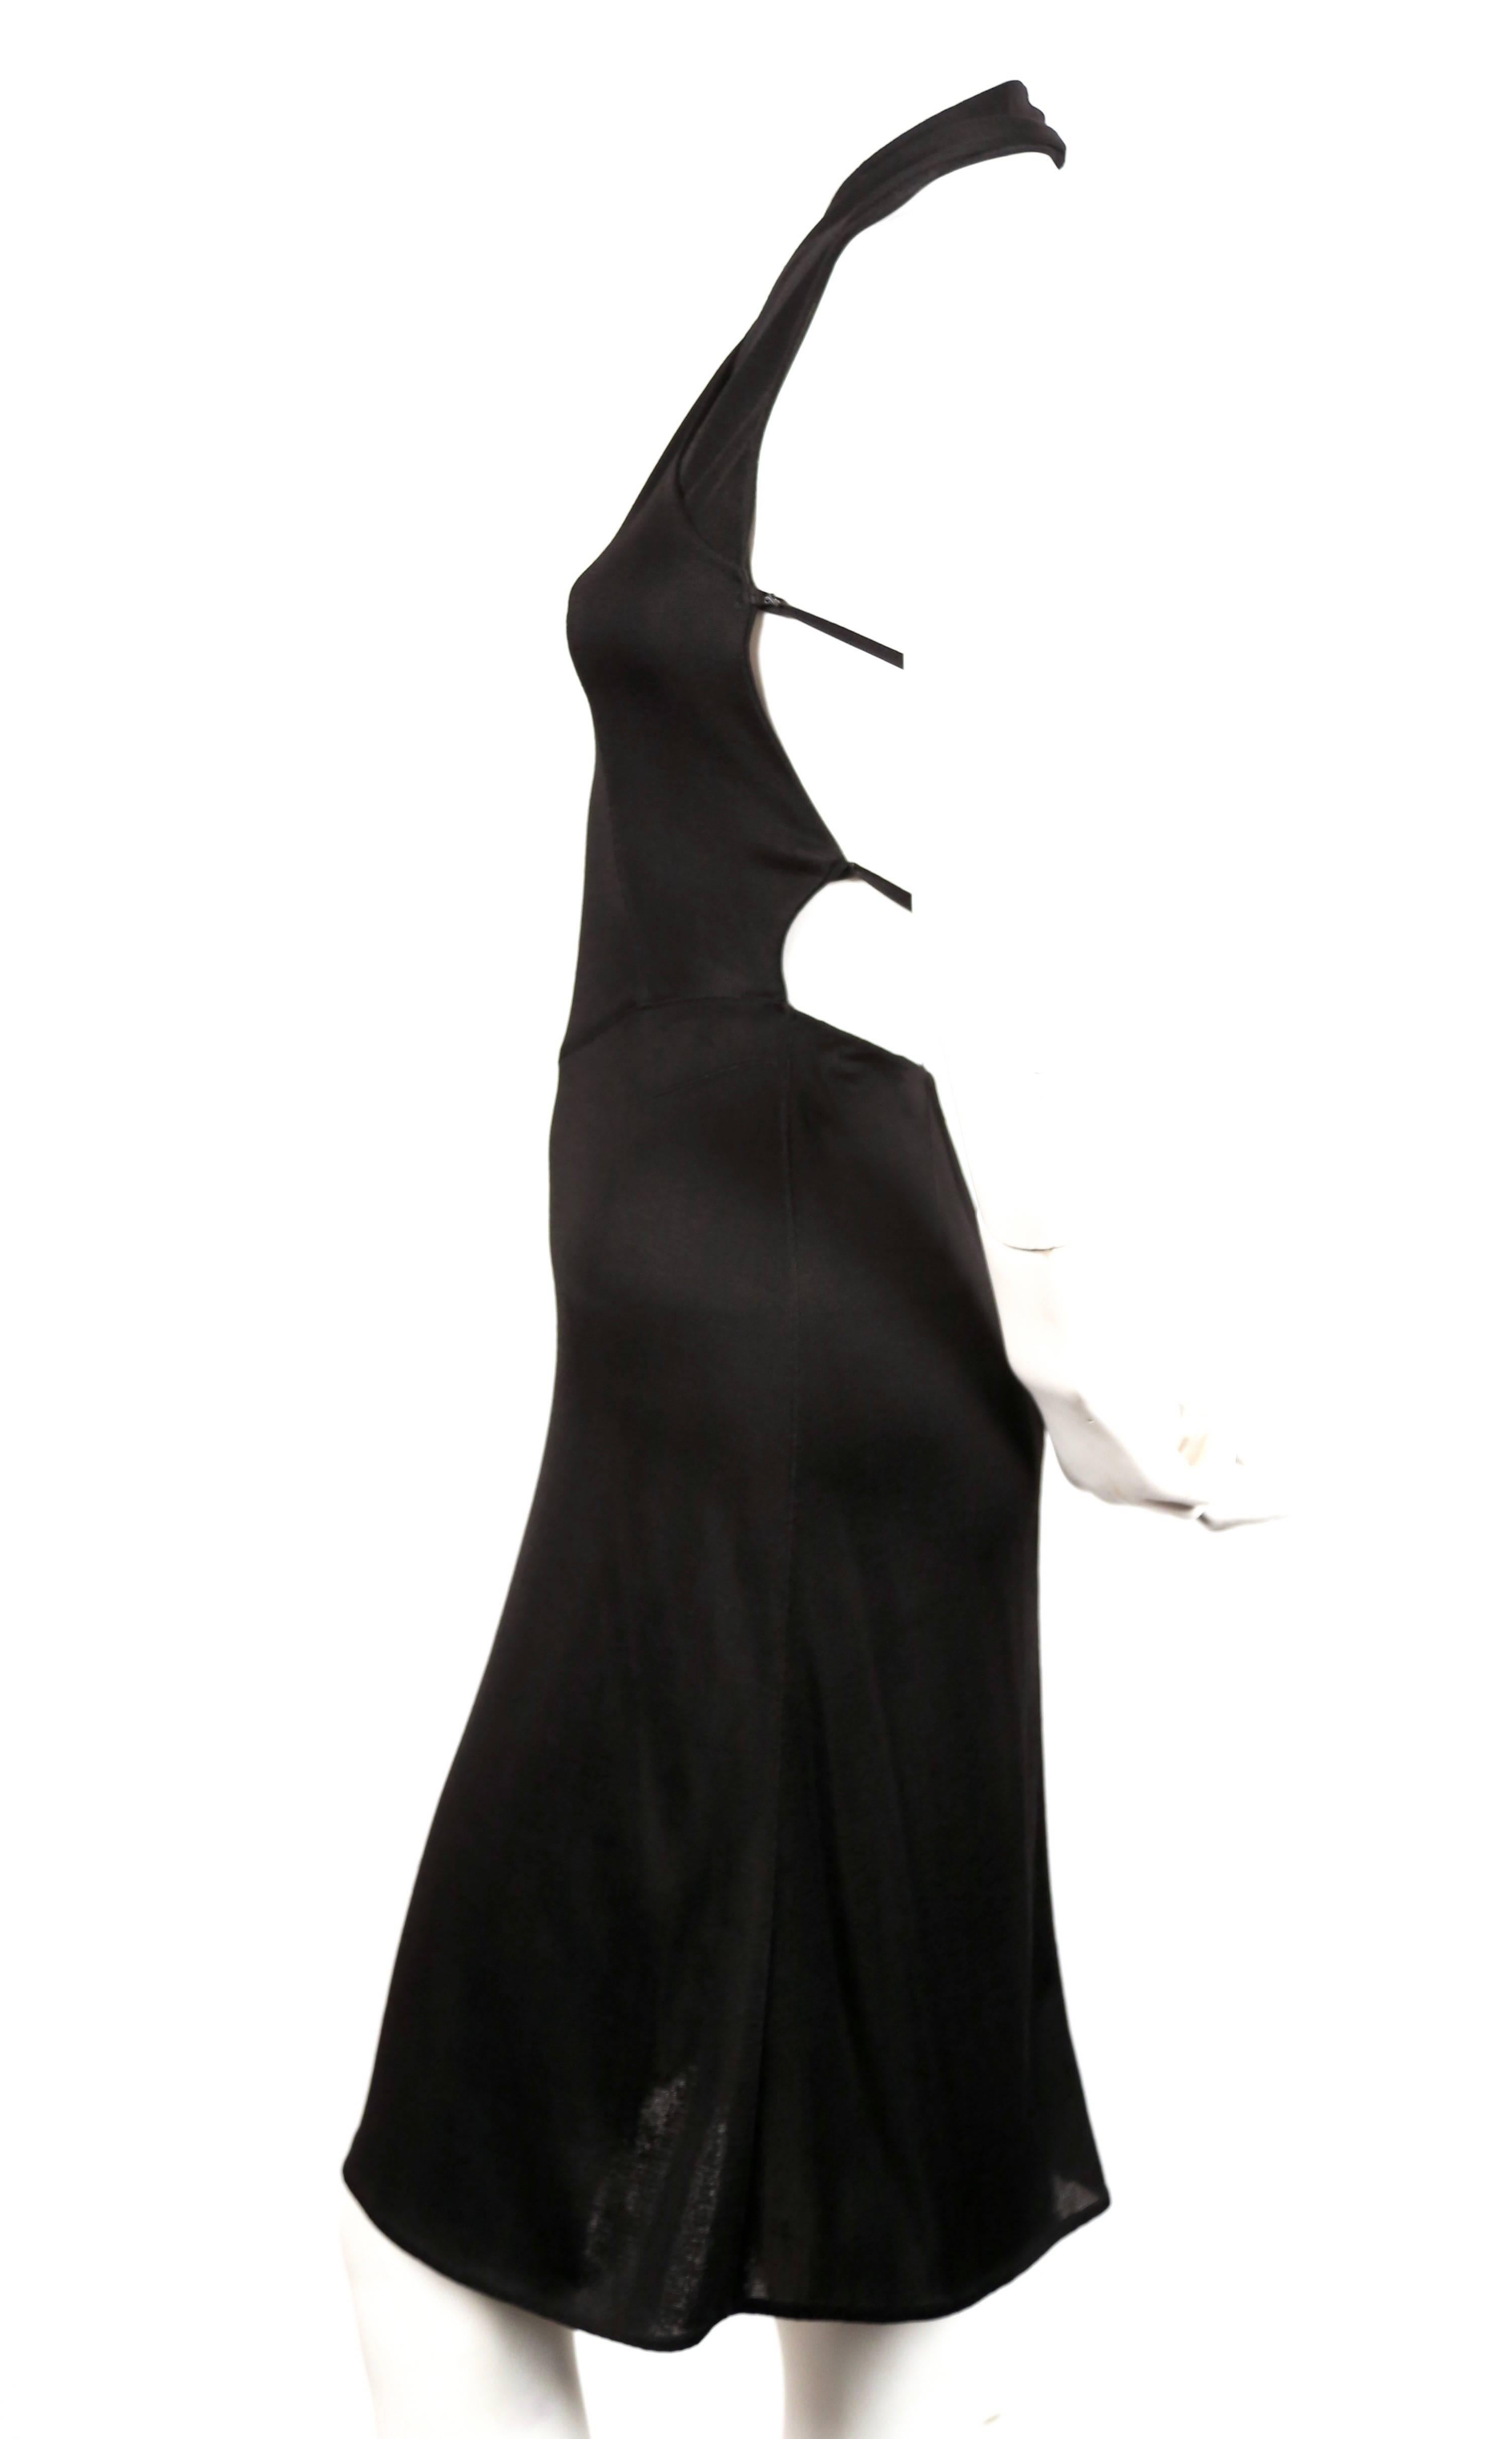 Très rare, cette robe noire à dos nu conçue par Azzedine Alaia date de 2001 et a été vue à de nombreuses reprises, notamment par Karolina Kurkova, photographiée dans Elle US en septembre 2000, Stephanie Seymour à New York en 2001, dans un éditorial